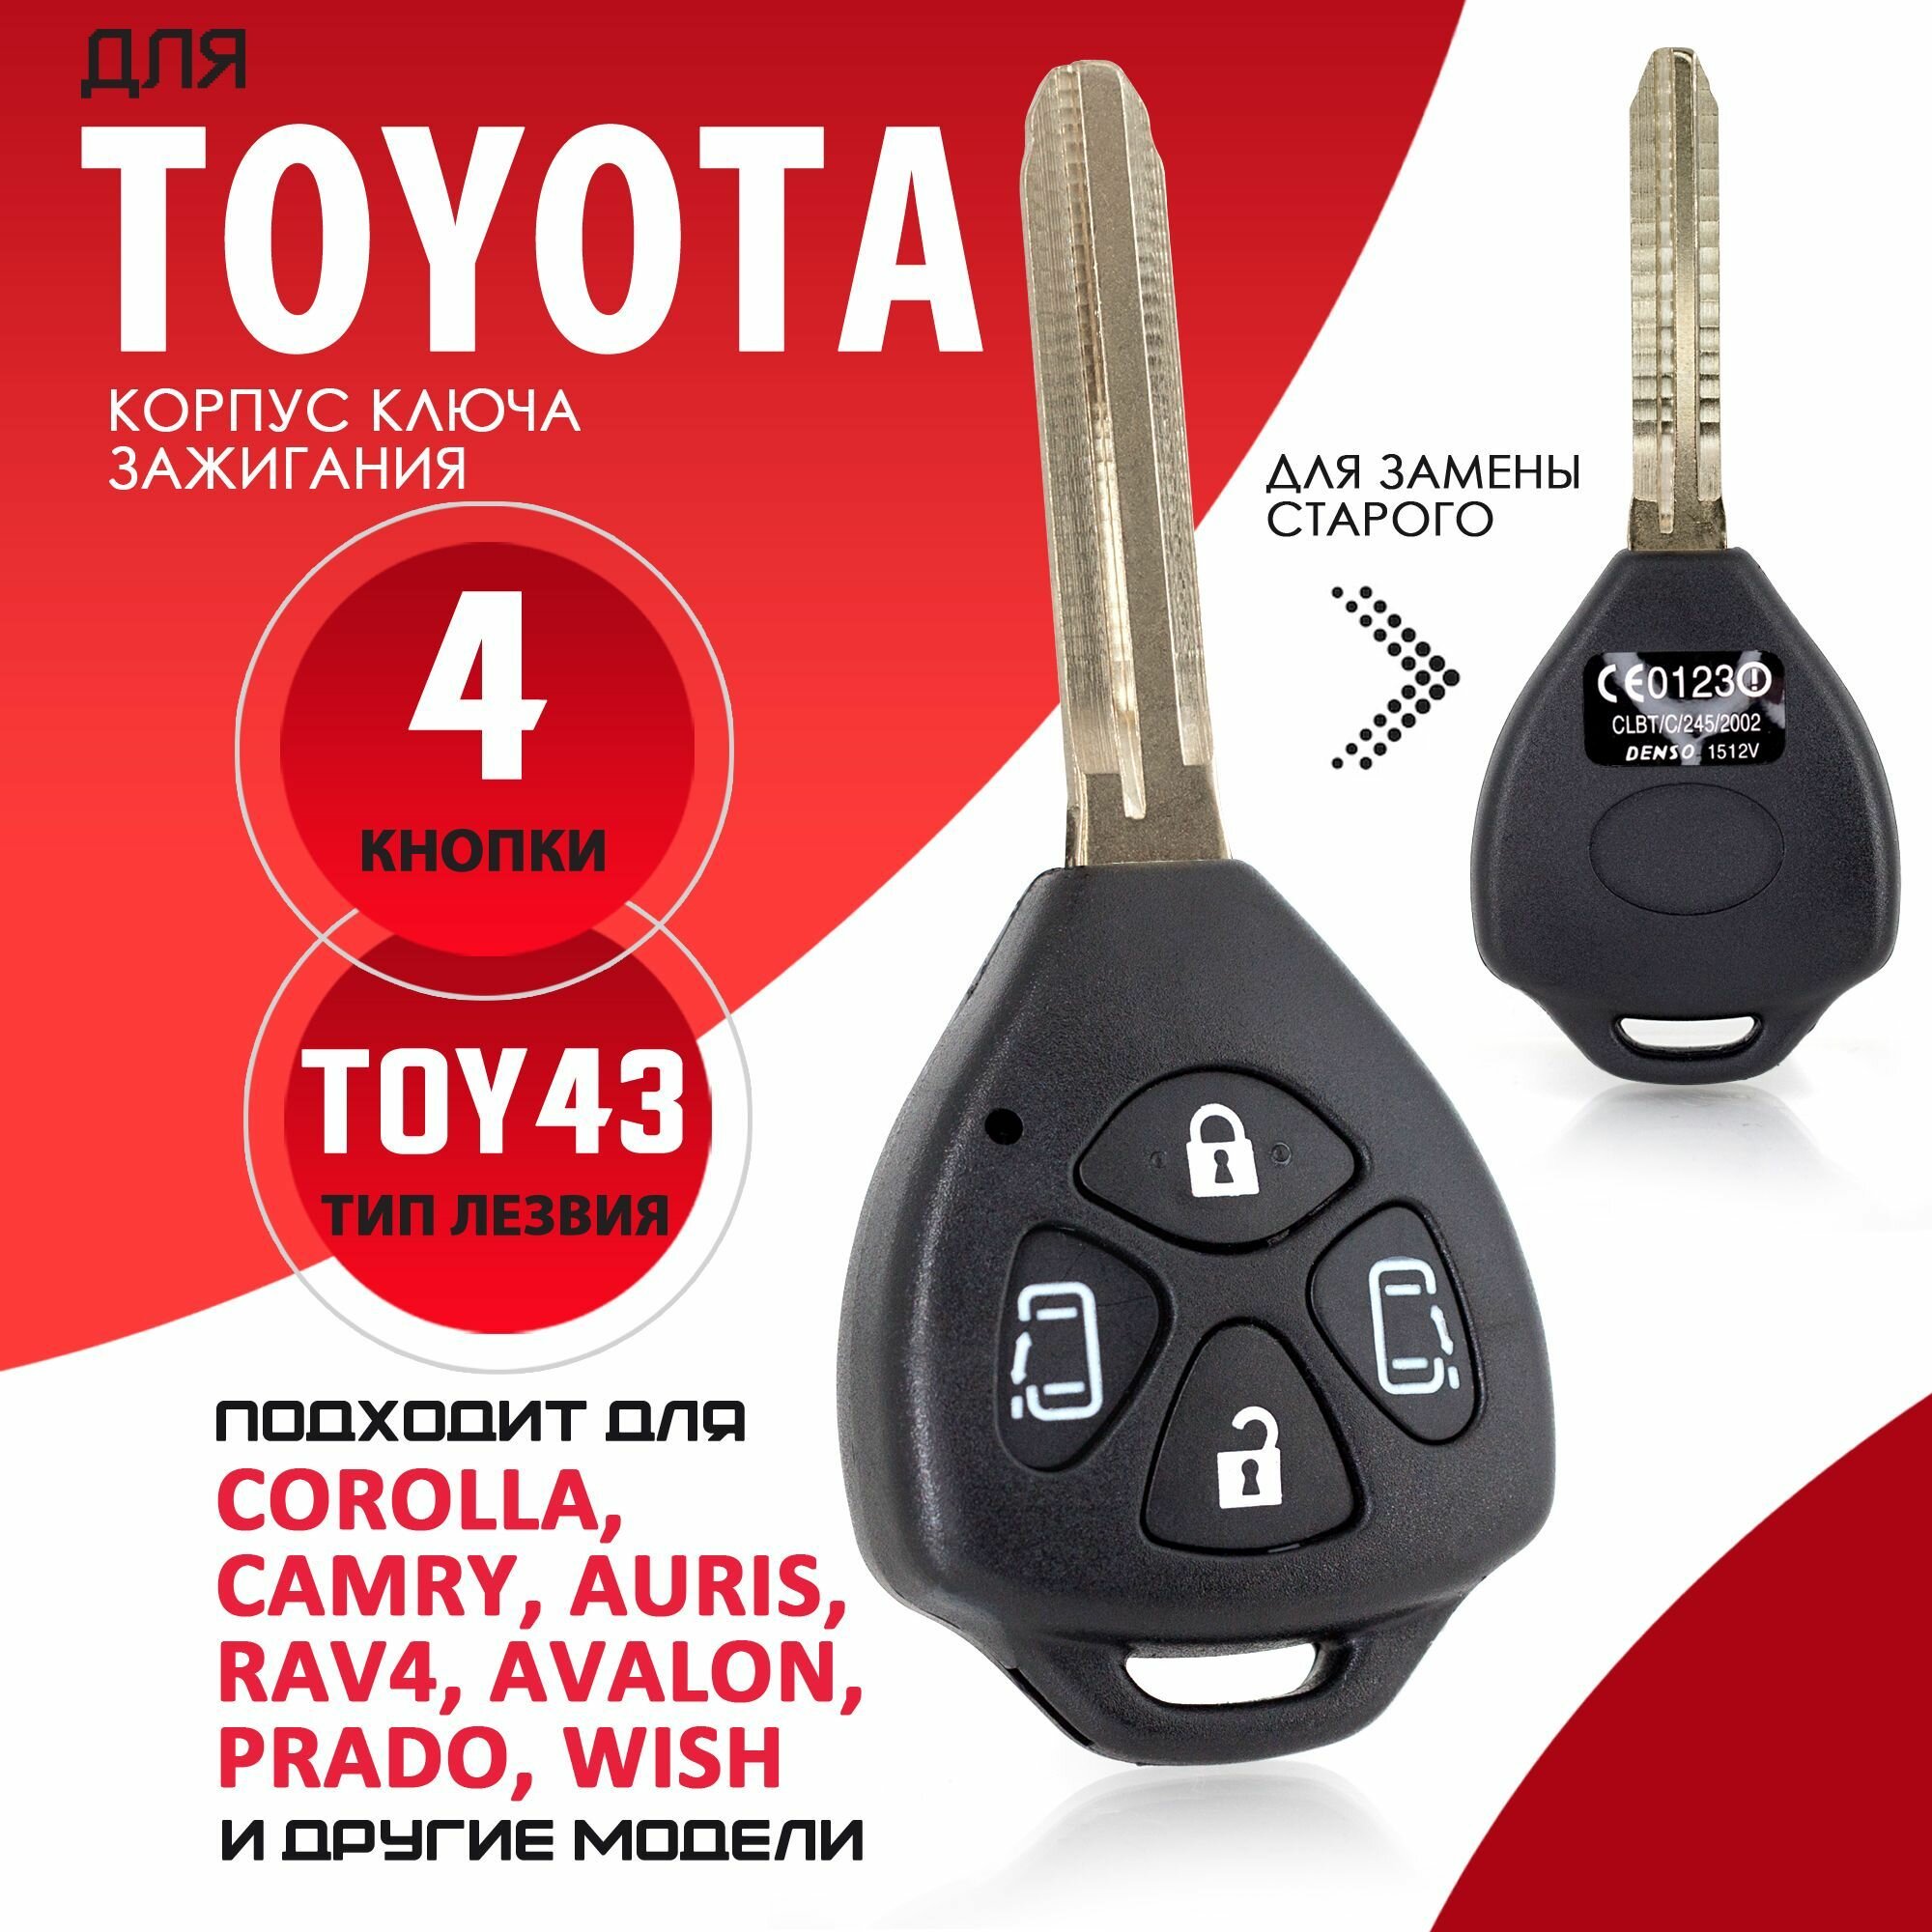 Корпус ключа зажигания для Toyota / Тойота лезвие TOY43 - 4 кнопки / Брелок автомобильный